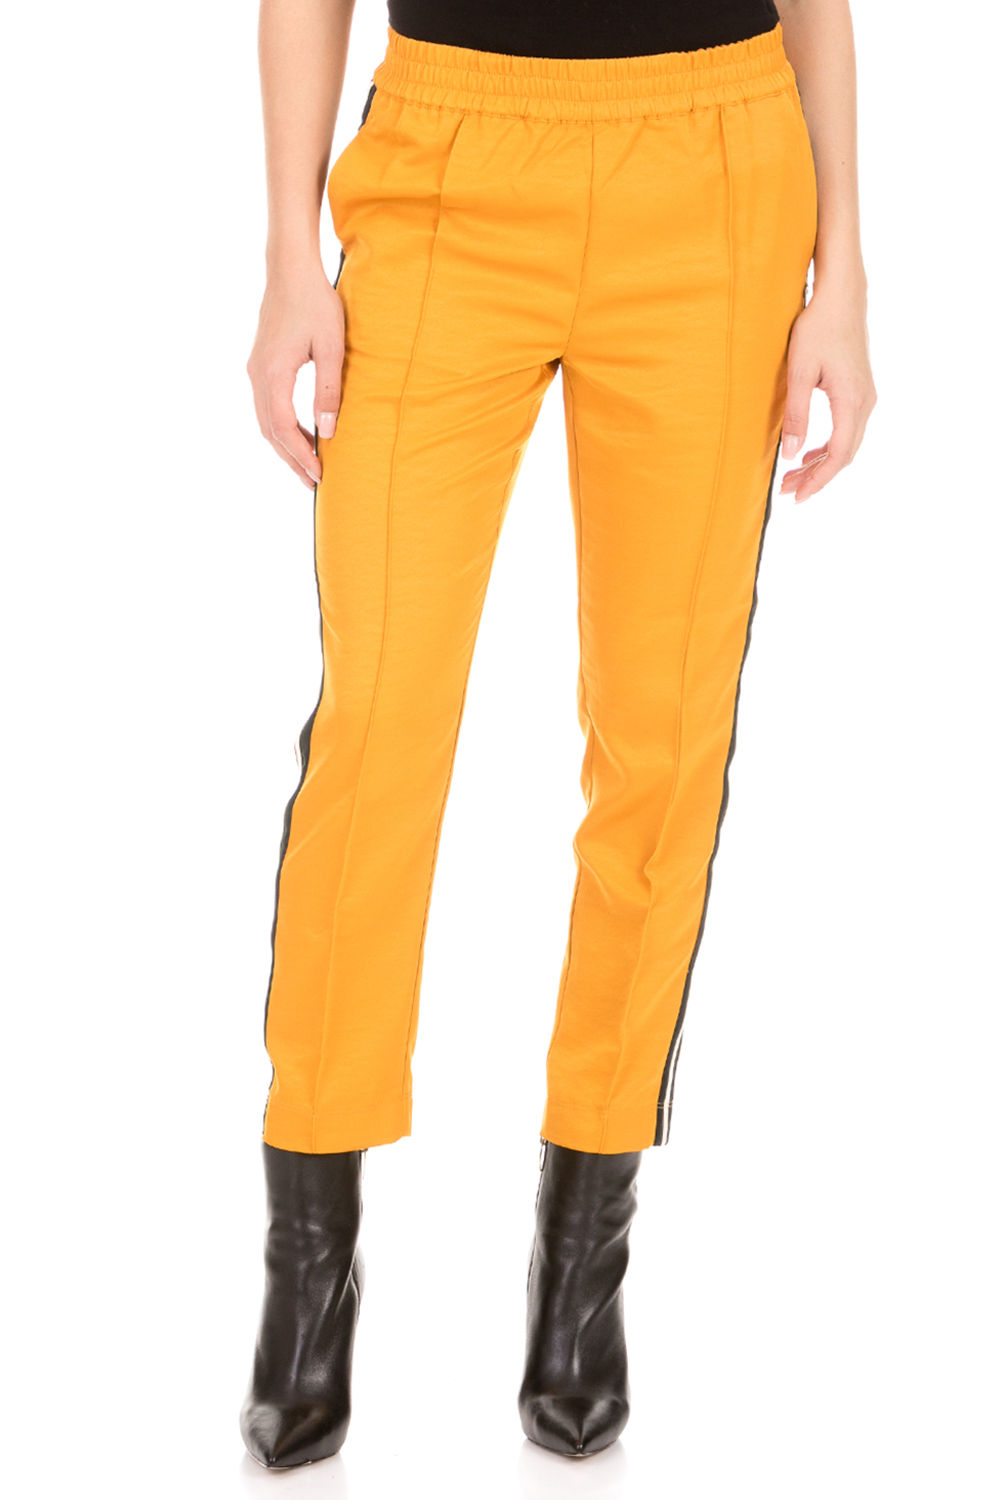 SCOTCH & SODA SCOTCH & SODA - Γυναικείο παντελόνι φόρμας SCOTCH & SODA κίτρινο